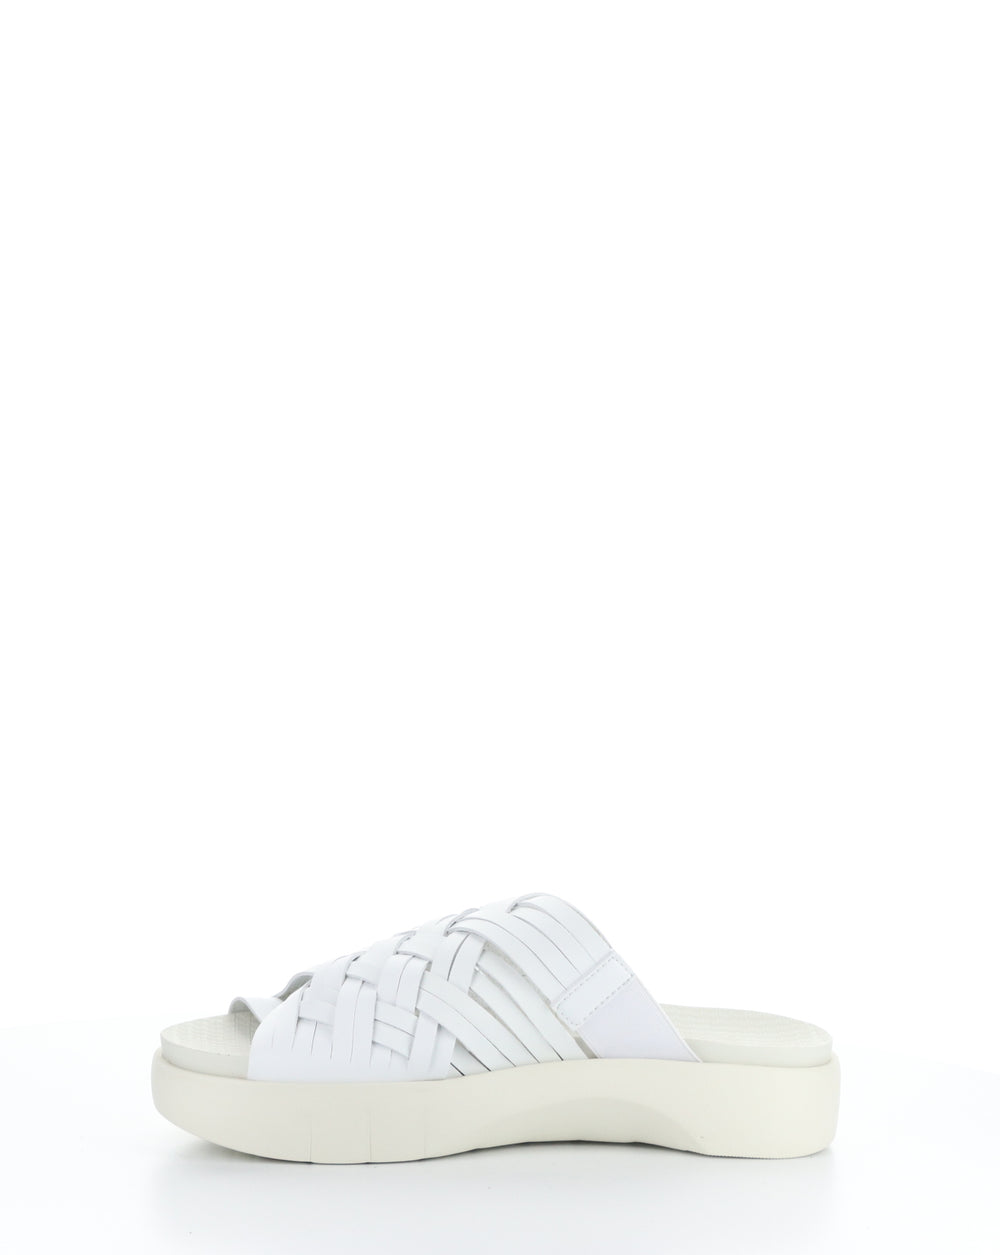 RISED WHITE Slip-on Sandals